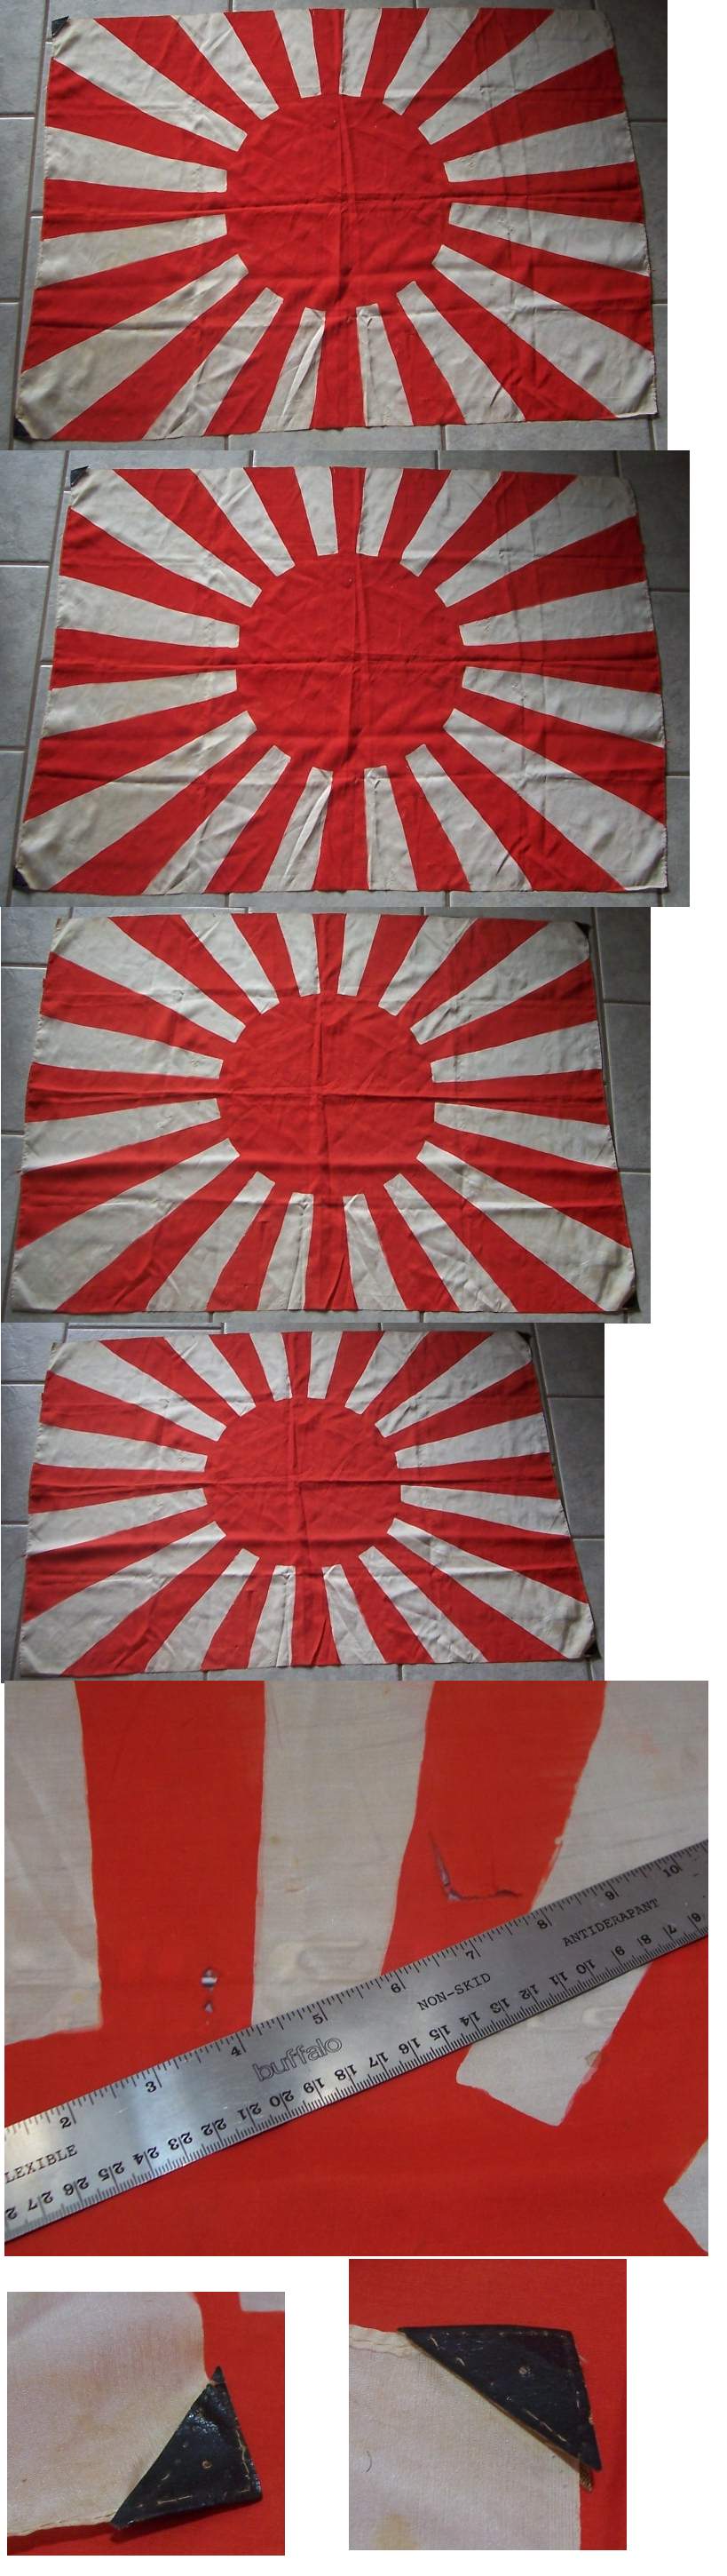 Japanese Battle Flag